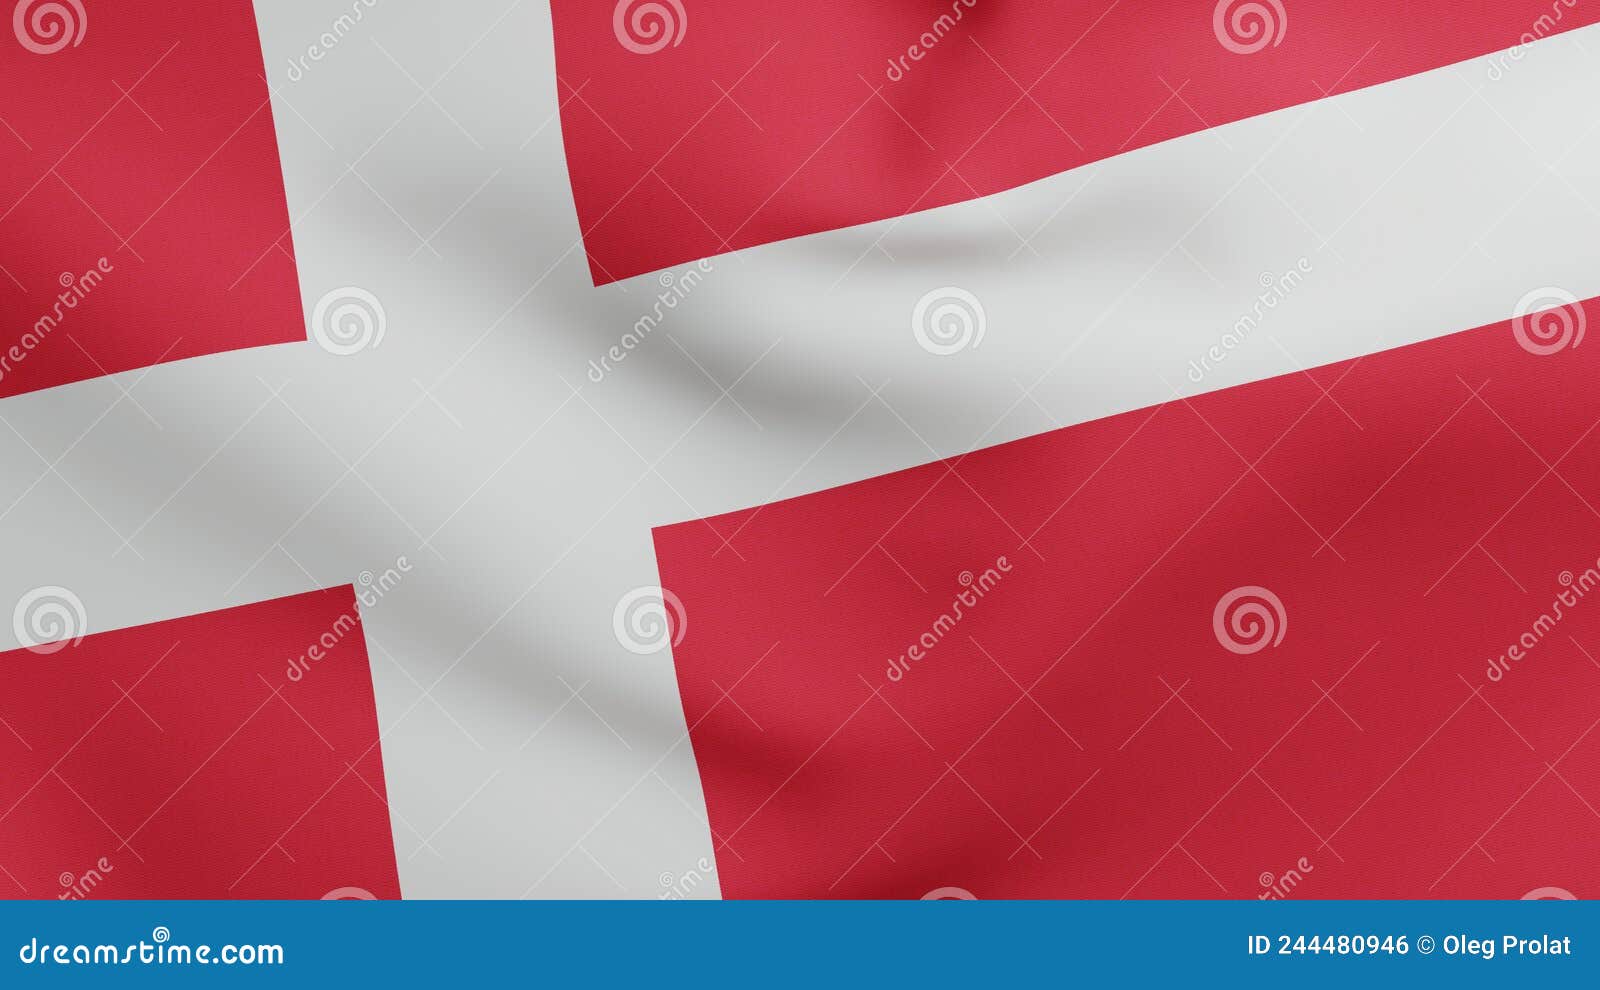 national flag of denmark waving 3d render, dannebrog with white scandinavian cross textile, flag kings of denmark has